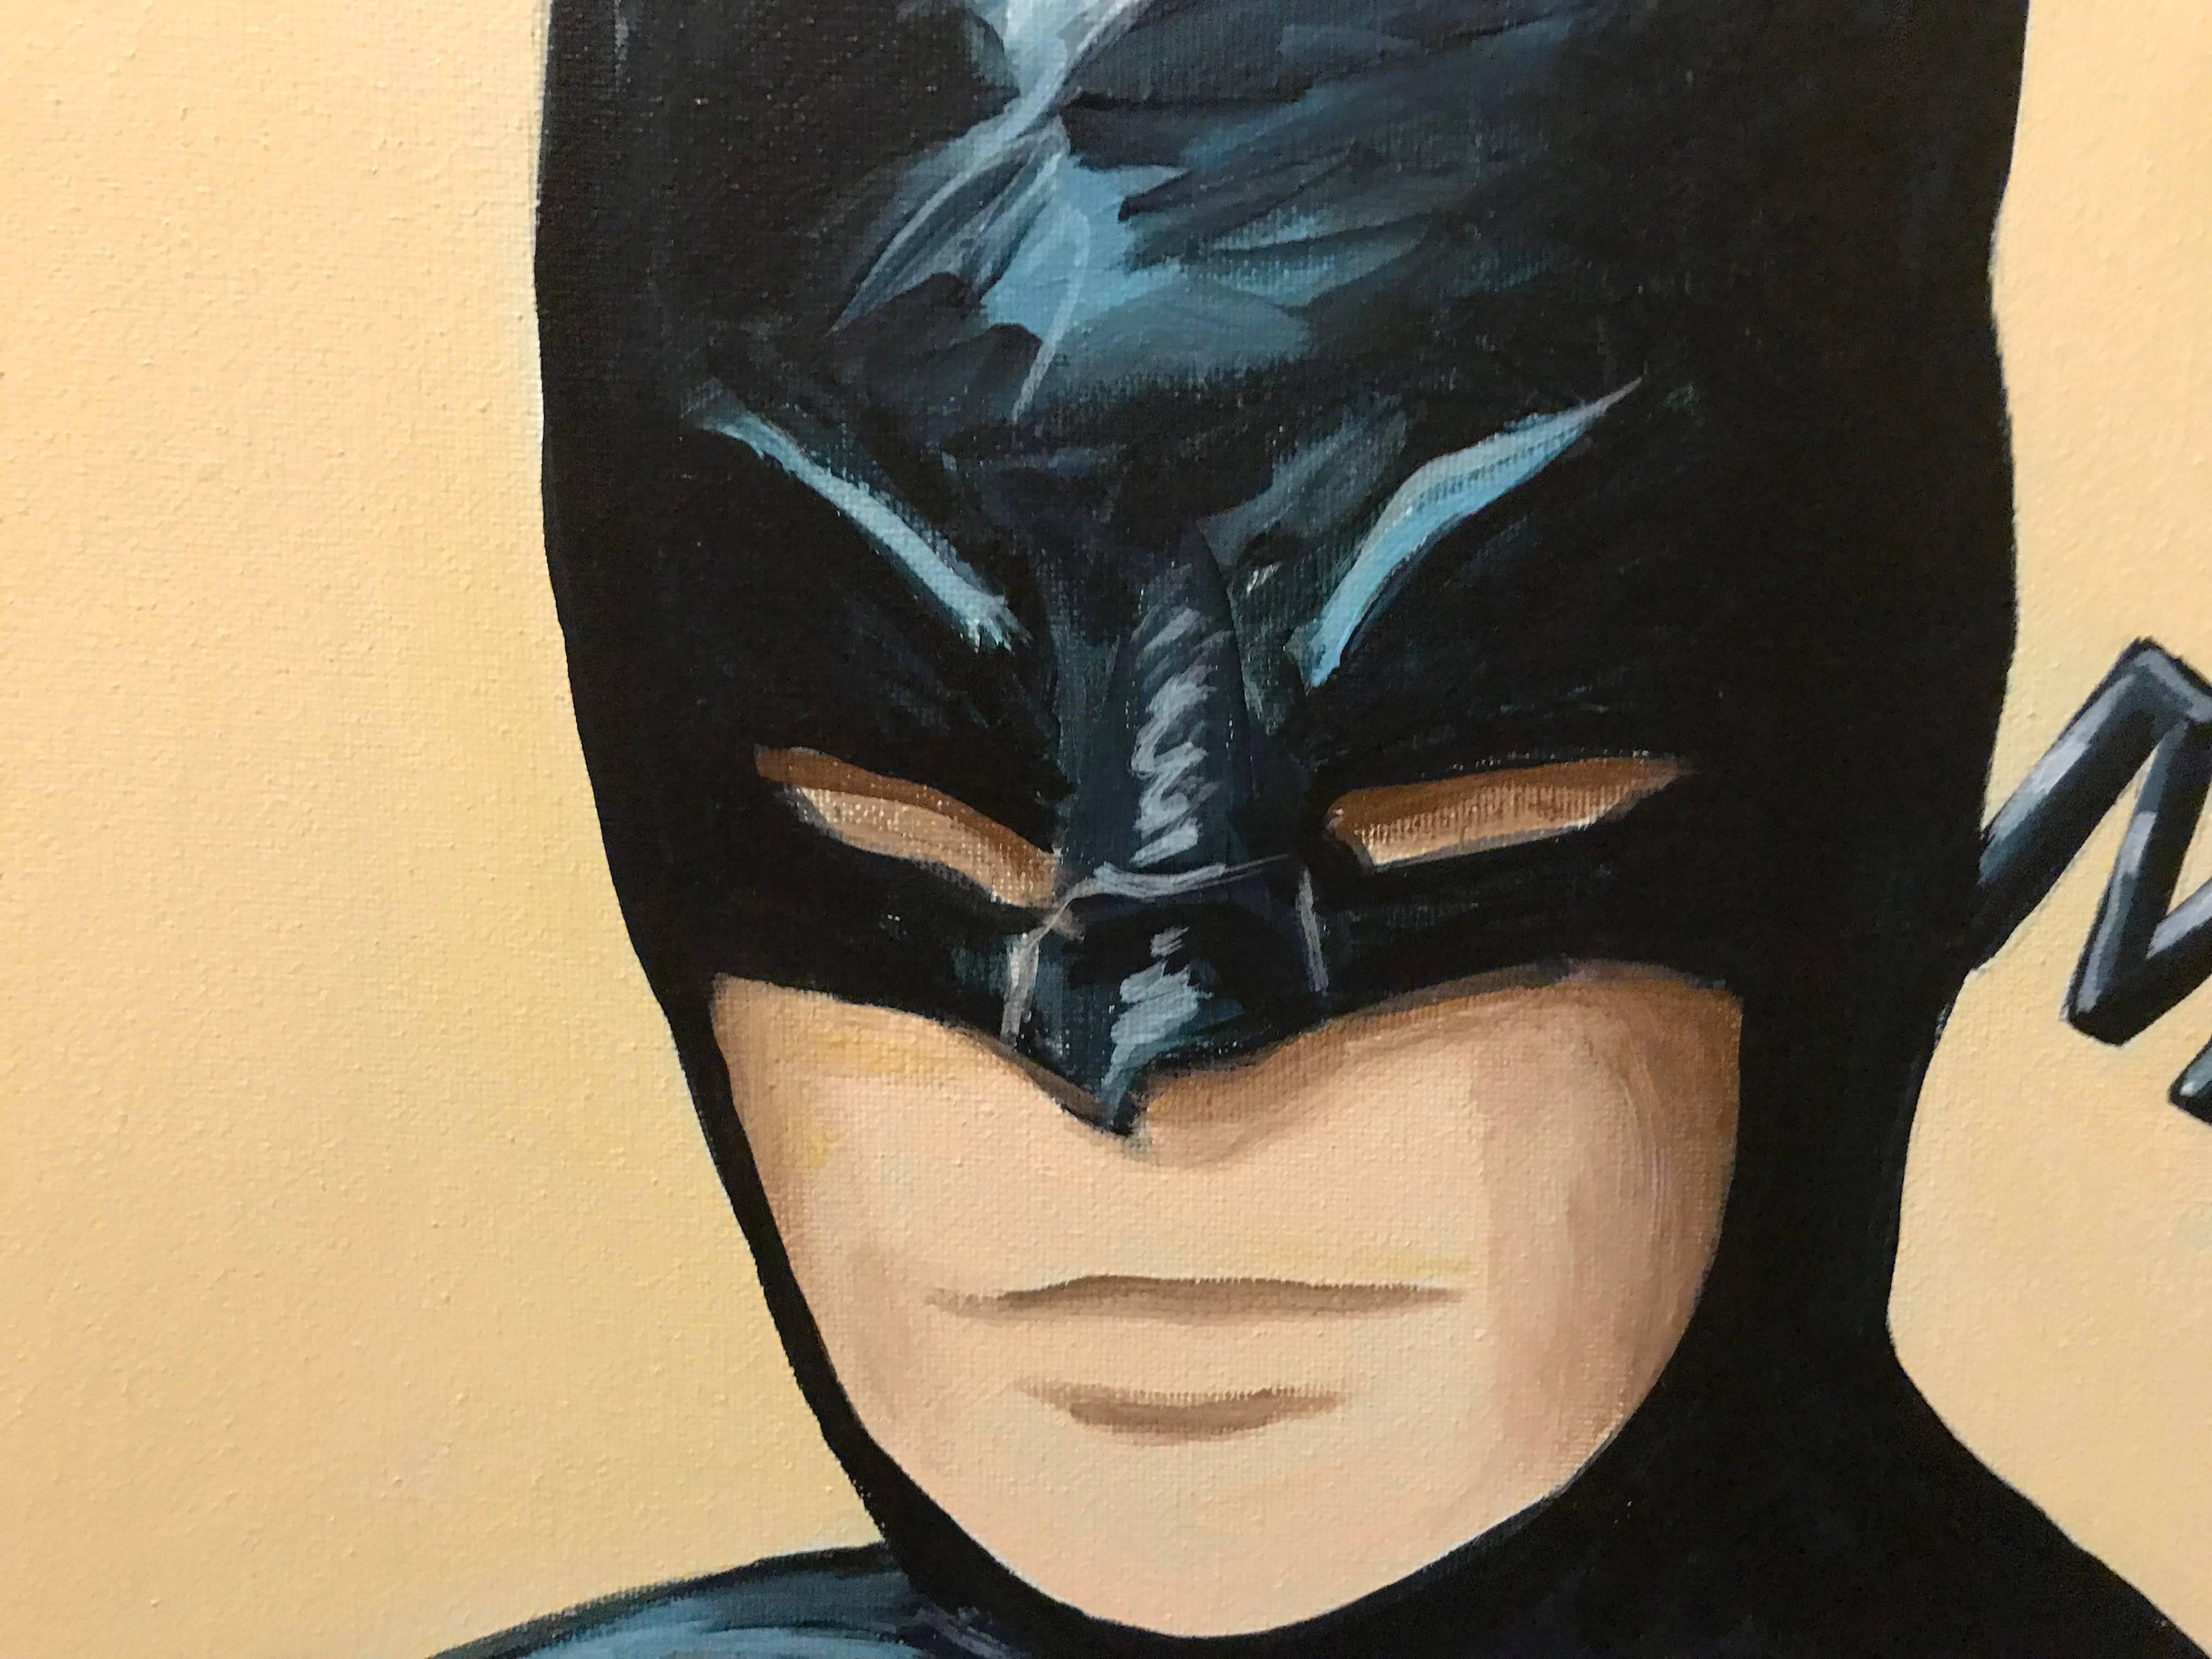 American Portrait of a Batman Pop Art Painting by Hatti Hoodsveld